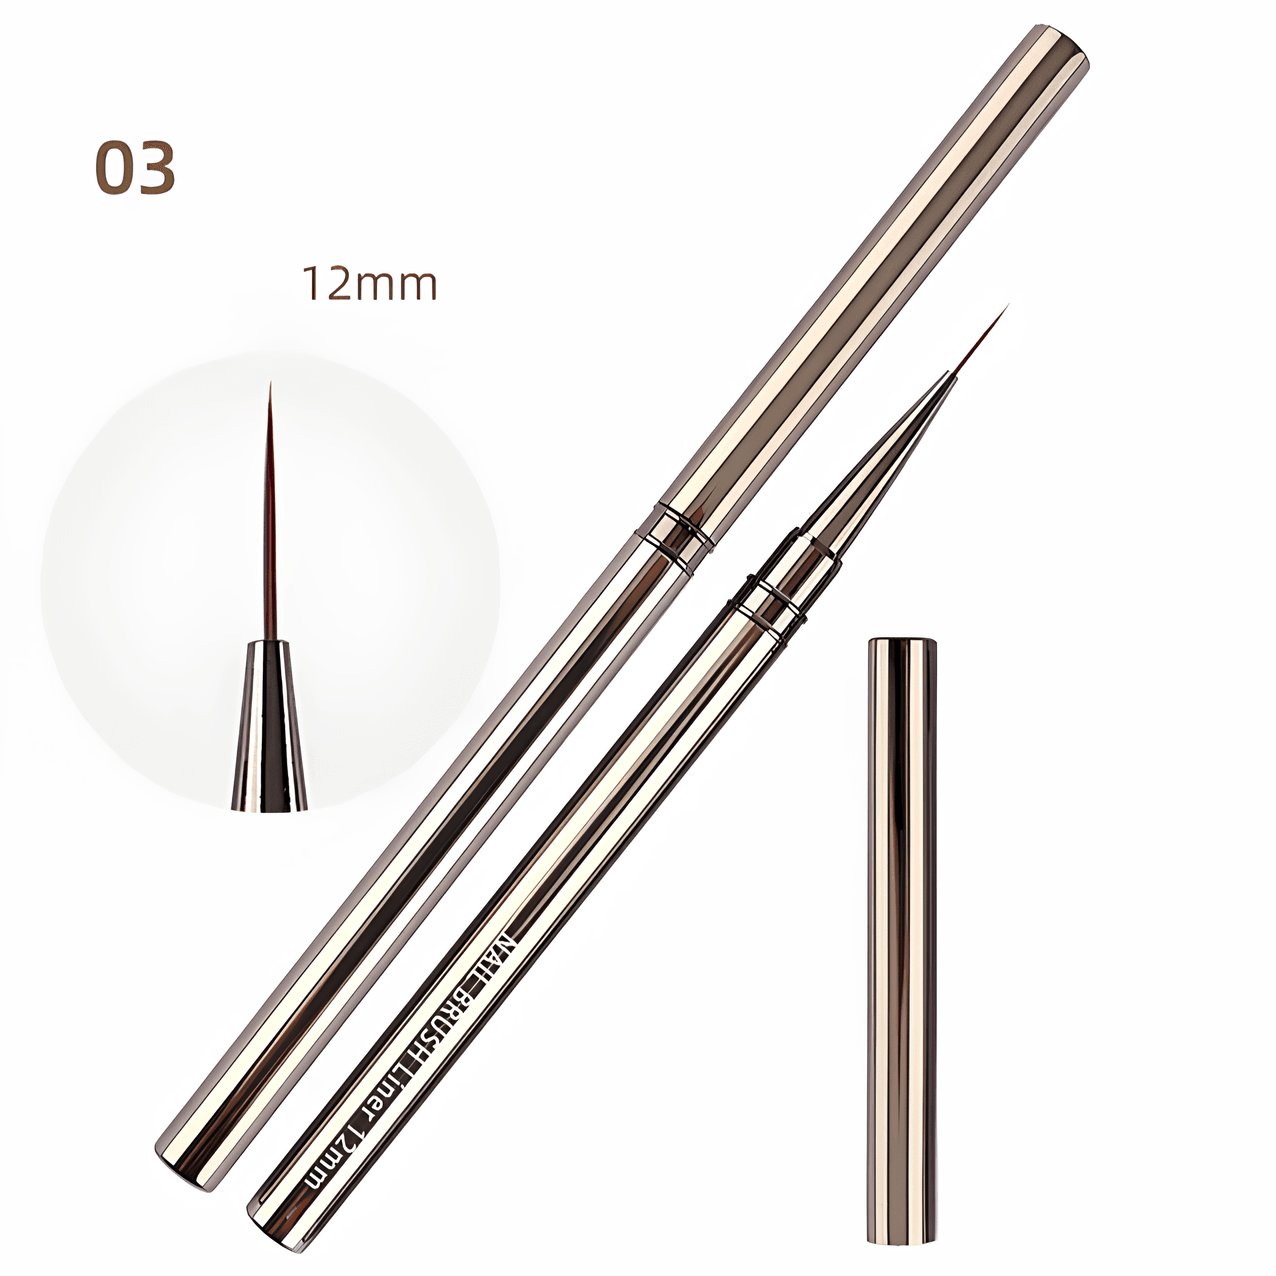  Tırnak Desen Fırçası Kapaklı Profesyonel Tırnak Nail Art Fırçası 9/12/18mm - 12mm